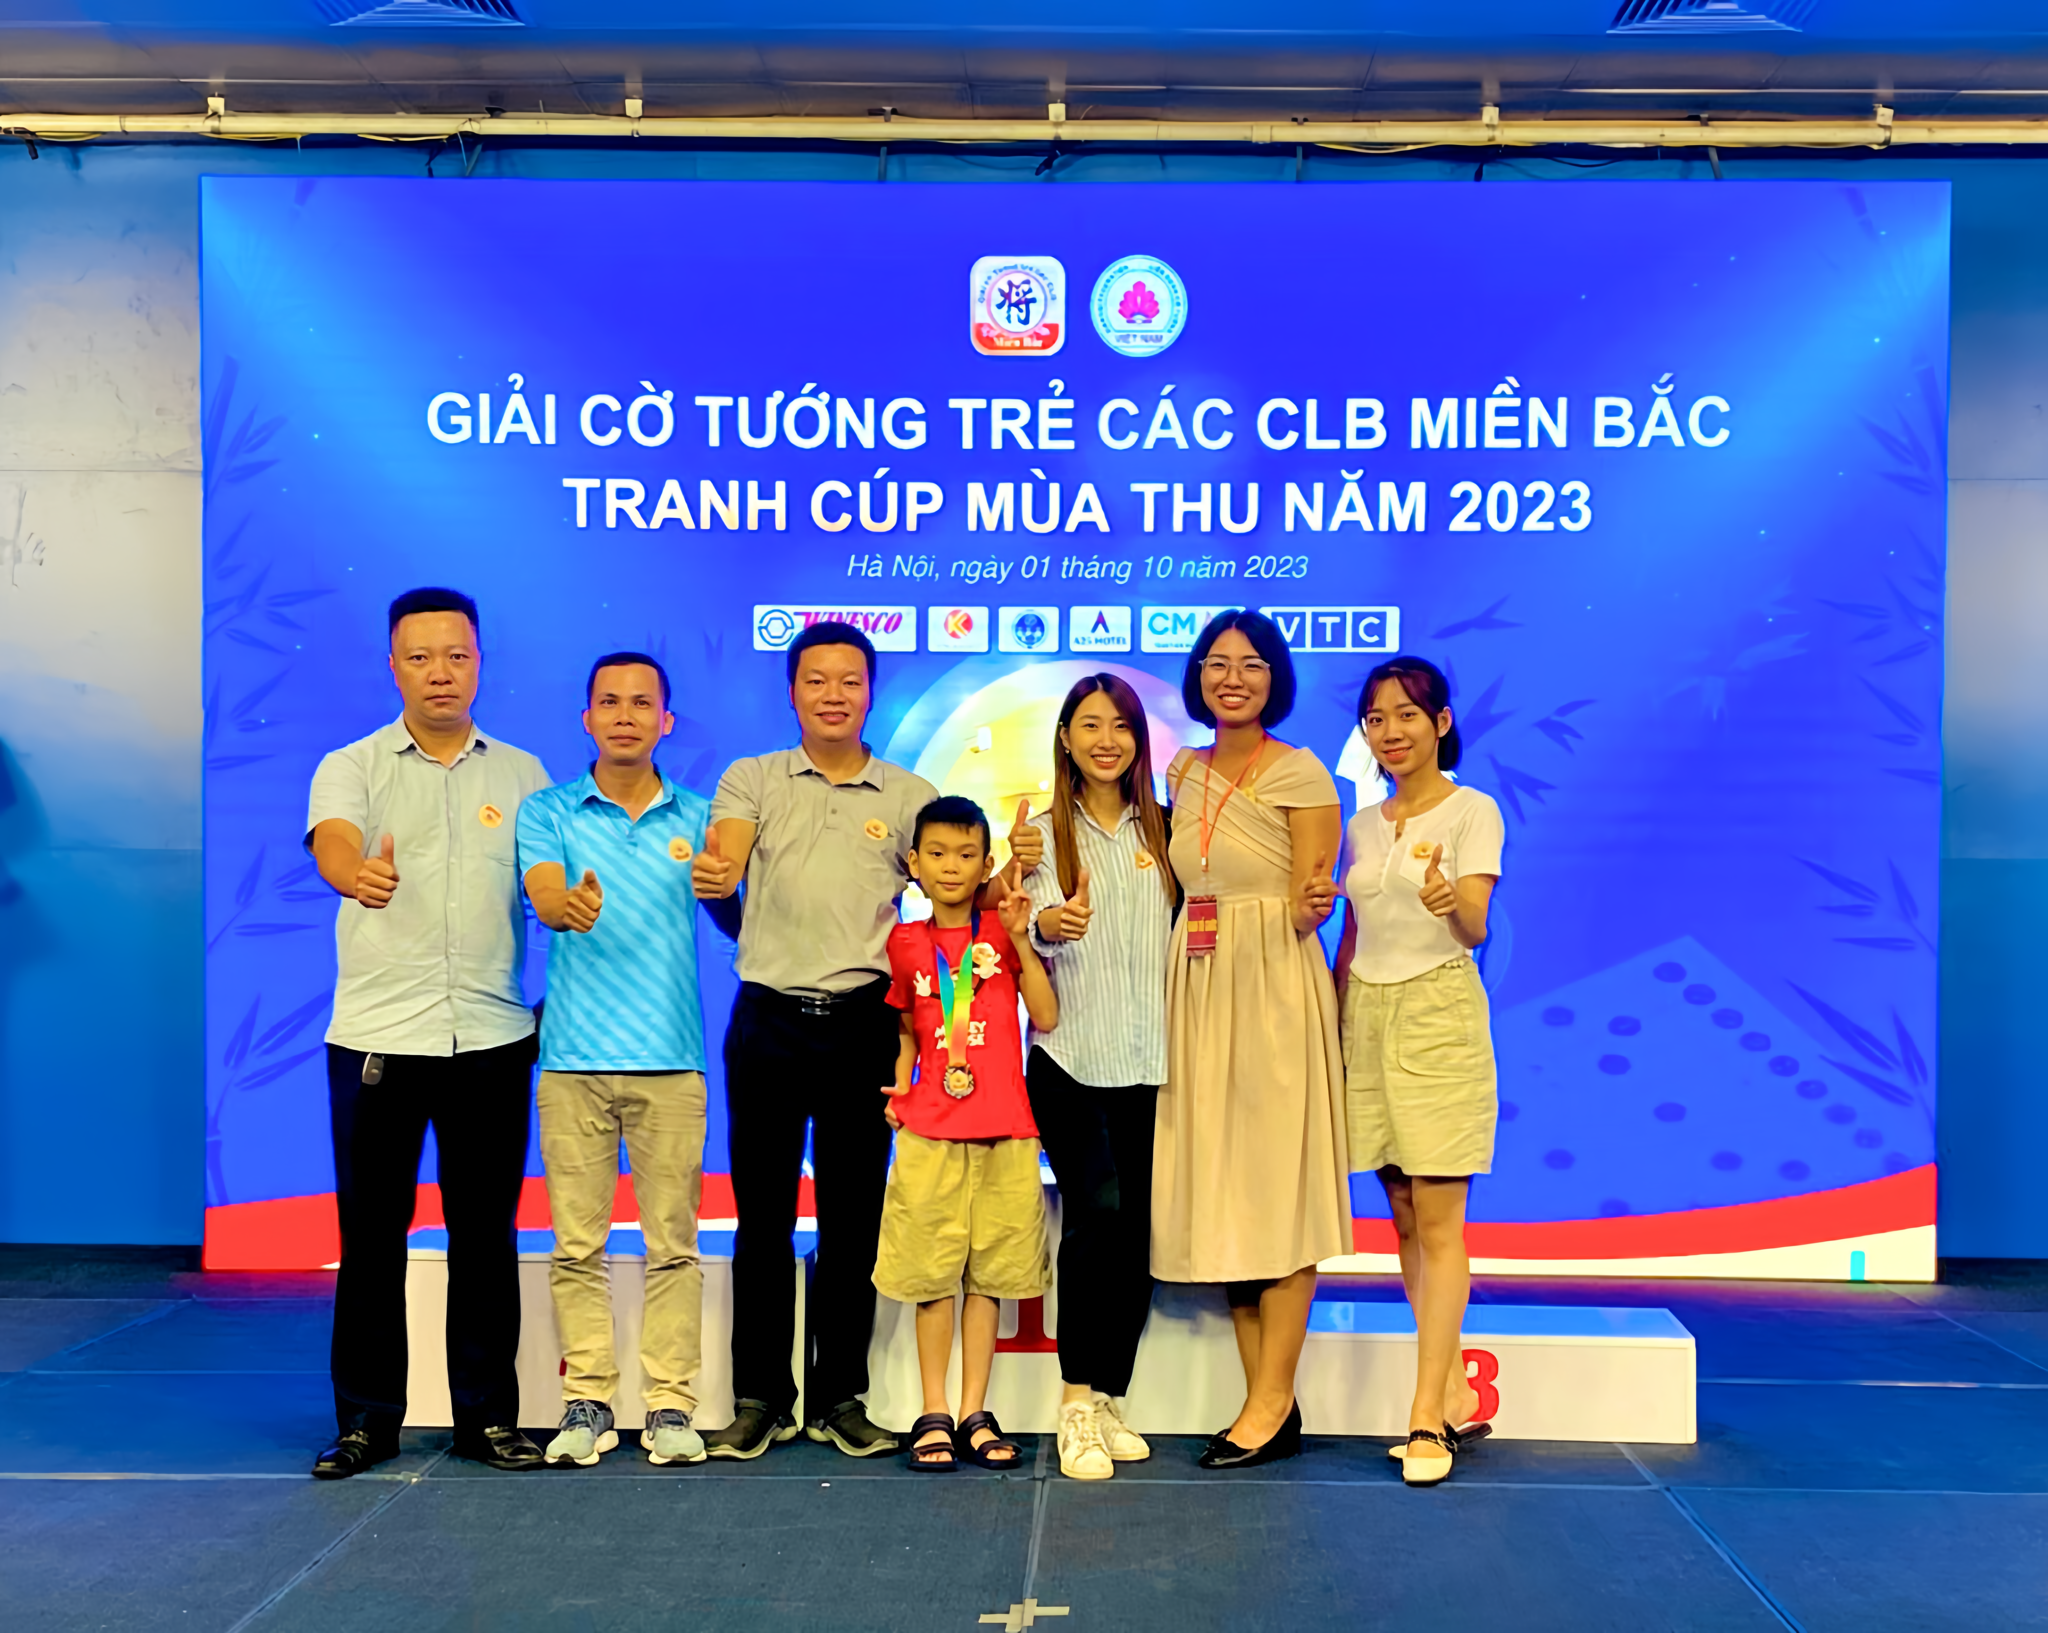 Anh chị em công ty chụp ảnh lưu niệm cùng bà Phạm Thu Hà - Trưởng ban tổ chức giải đấu